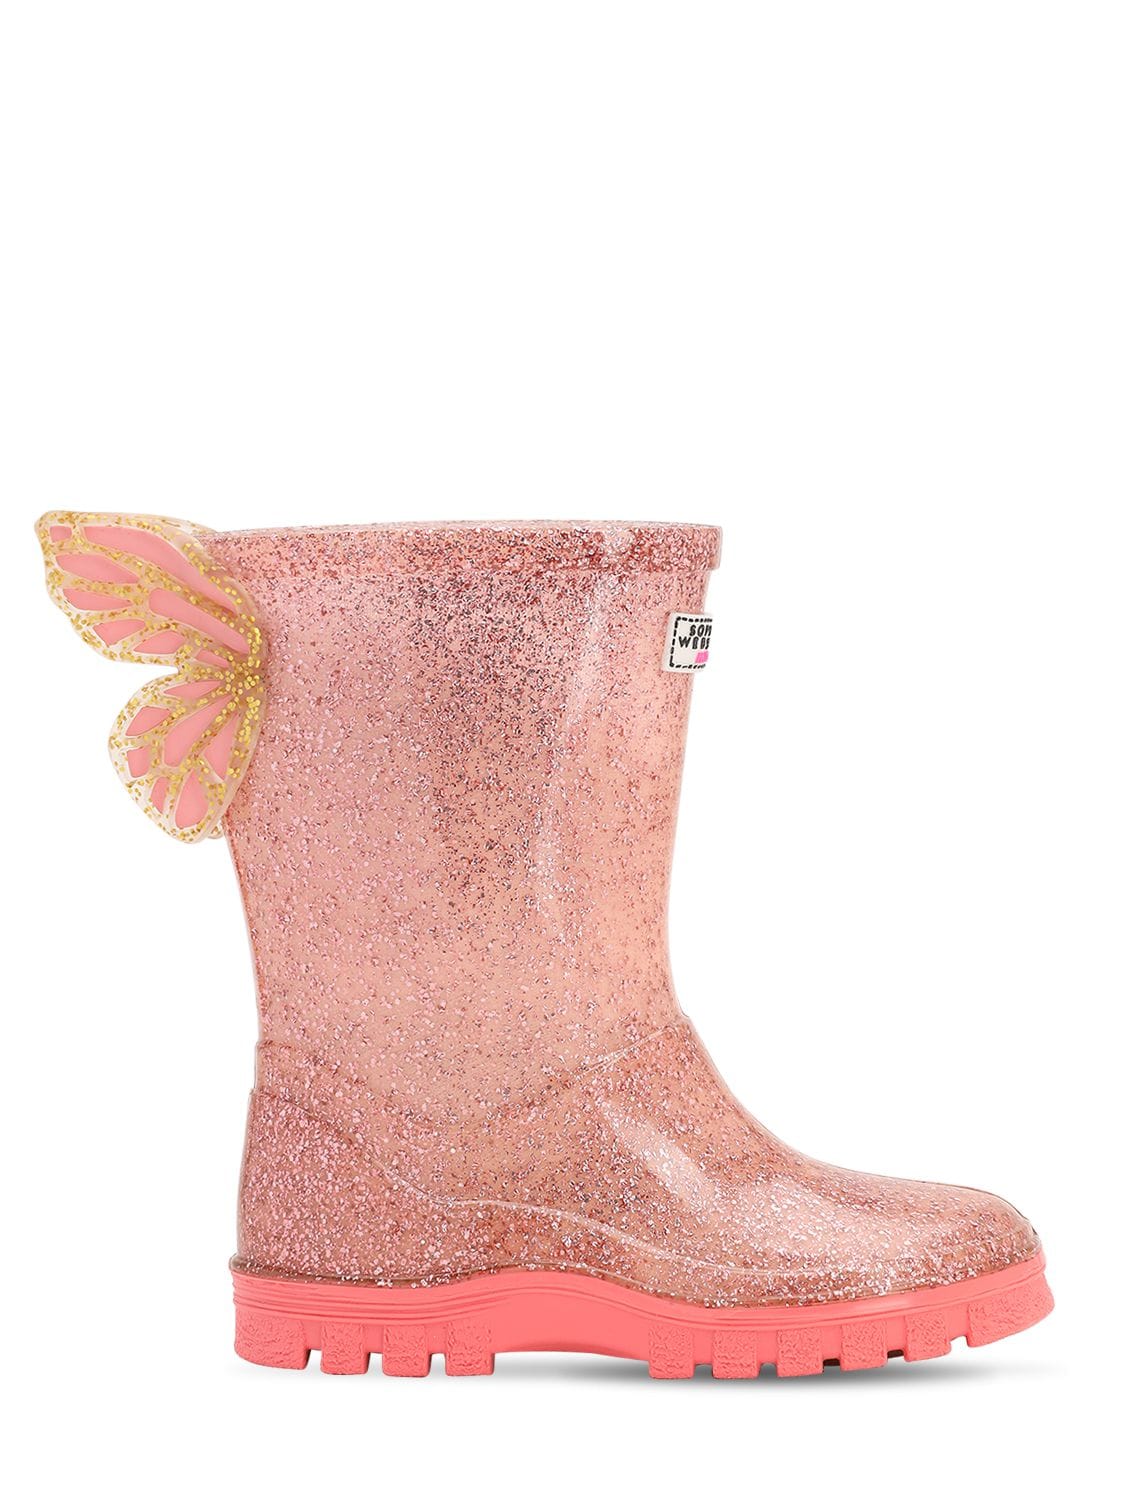 Sophia Webster Kids' Glittered Rubber Rain Boots In Pink